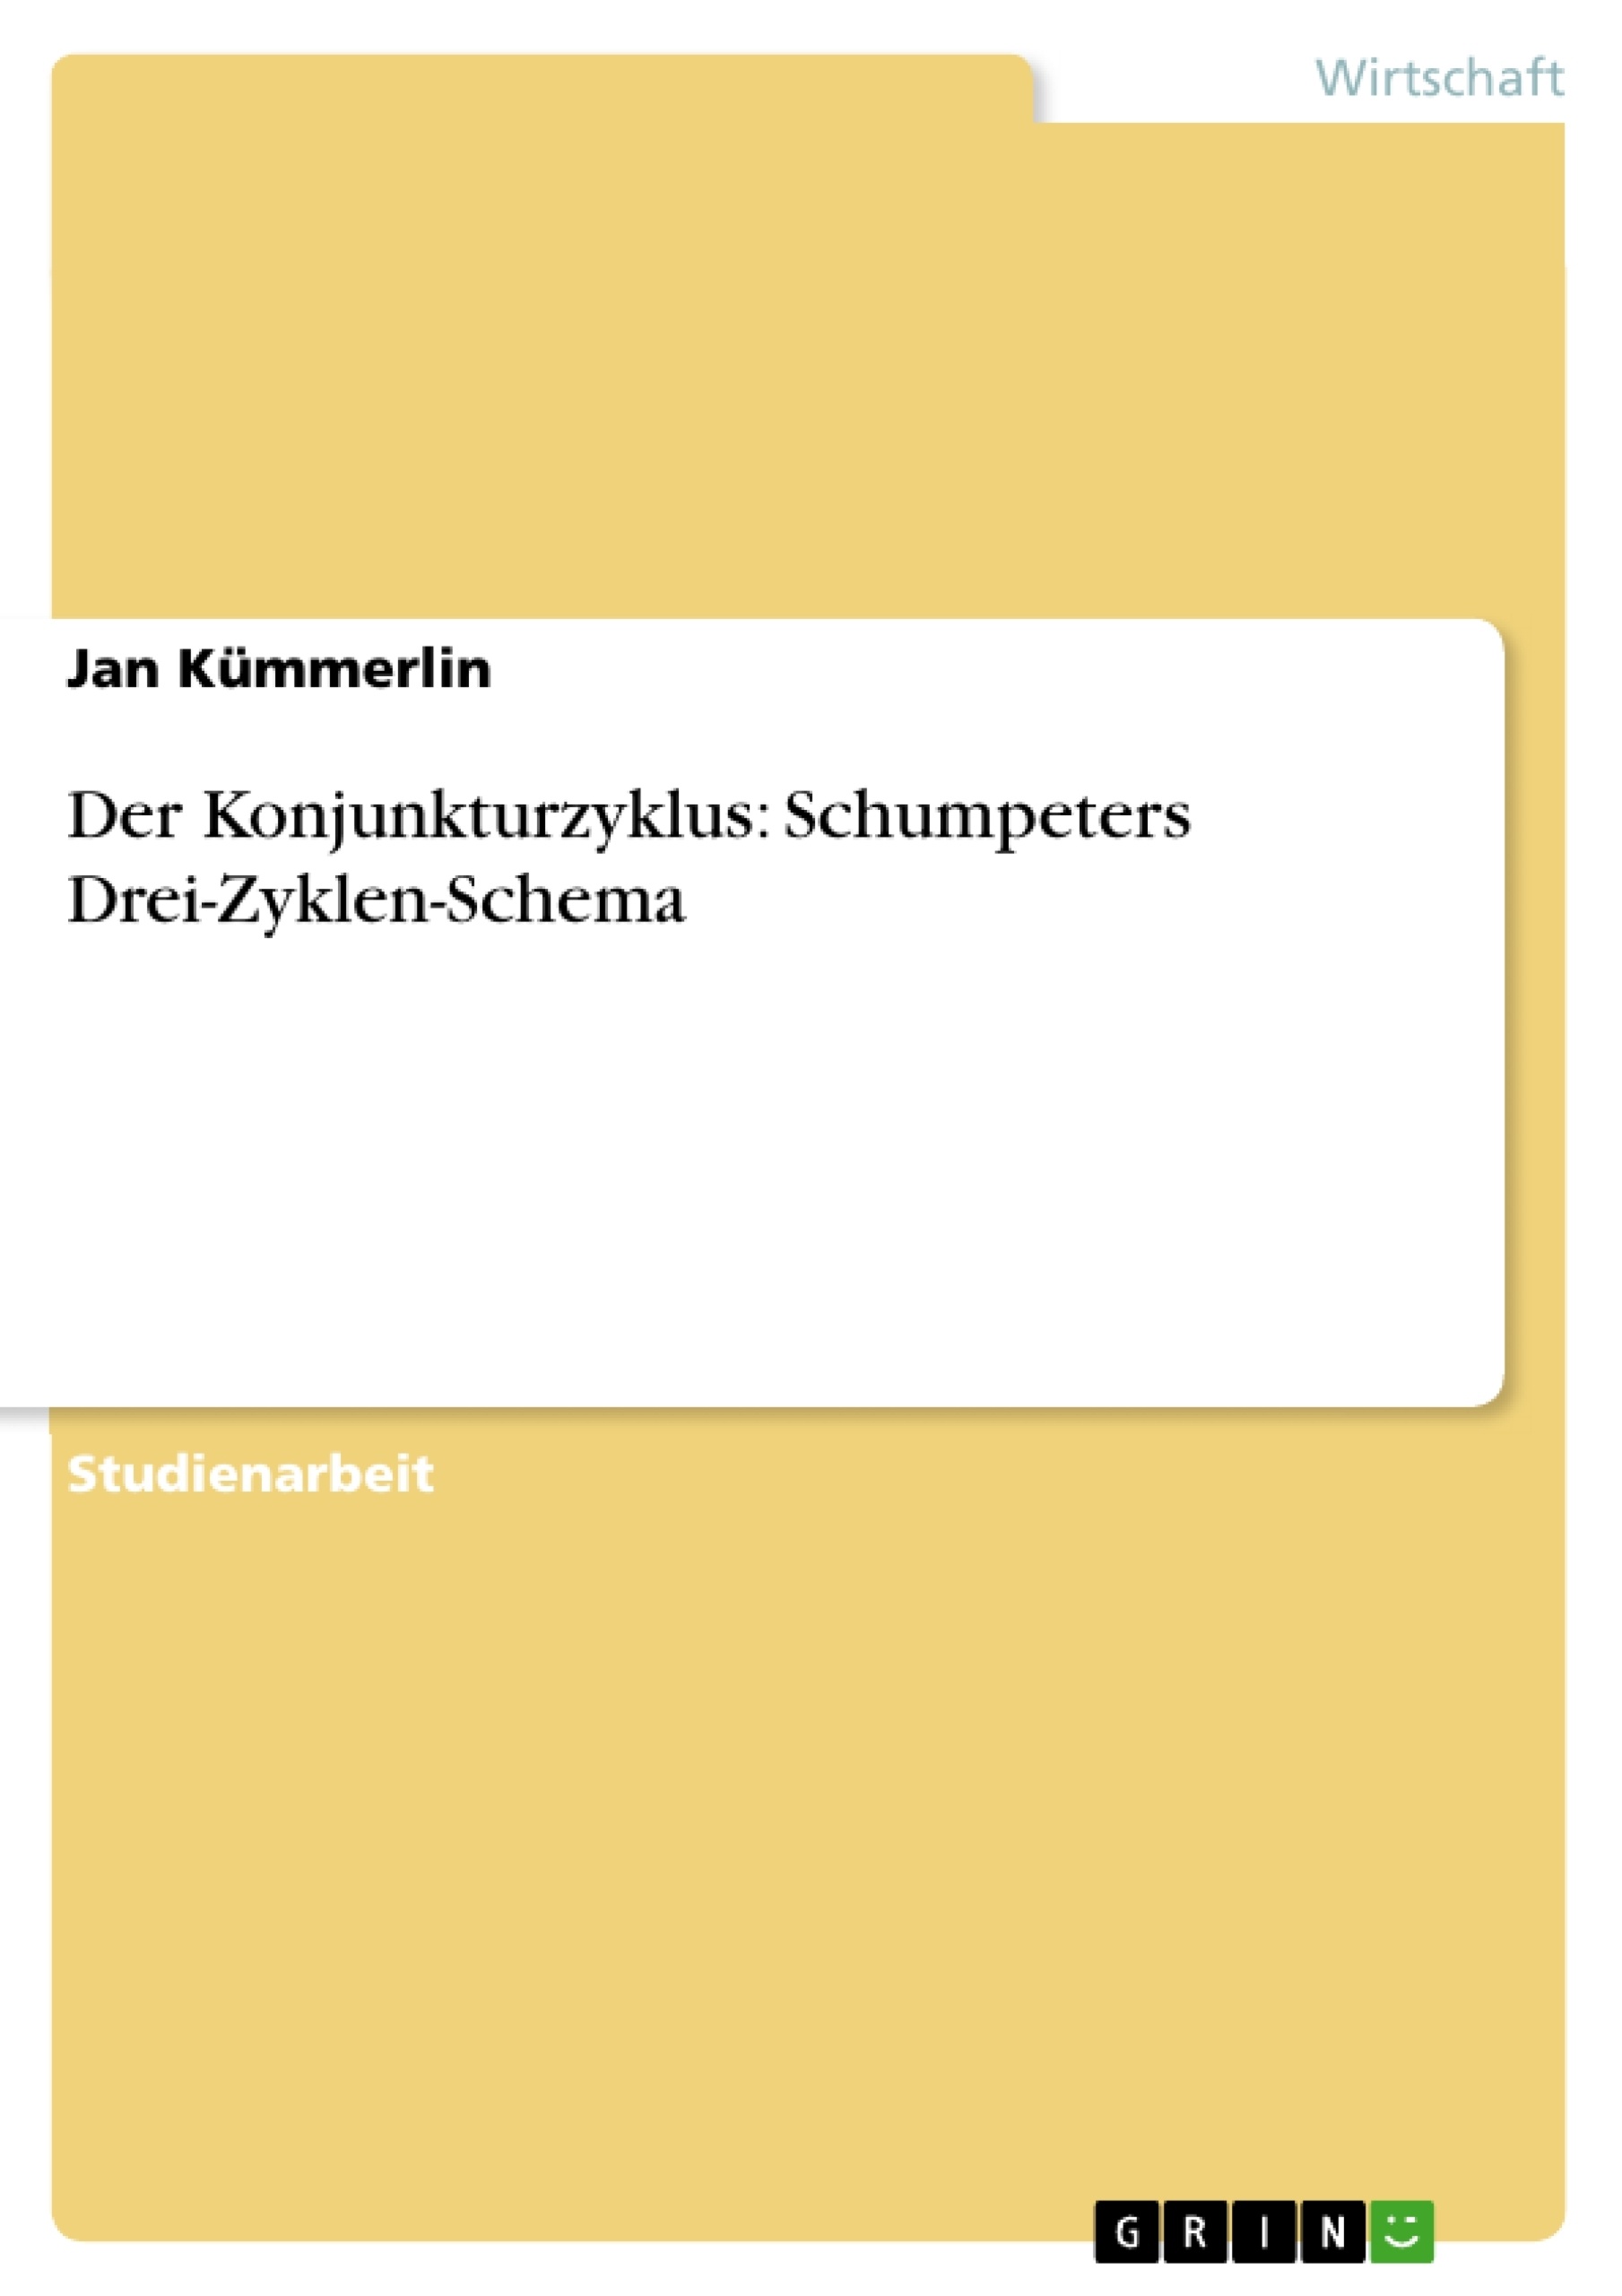 Title: Der Konjunkturzyklus: Schumpeters Drei-Zyklen-Schema